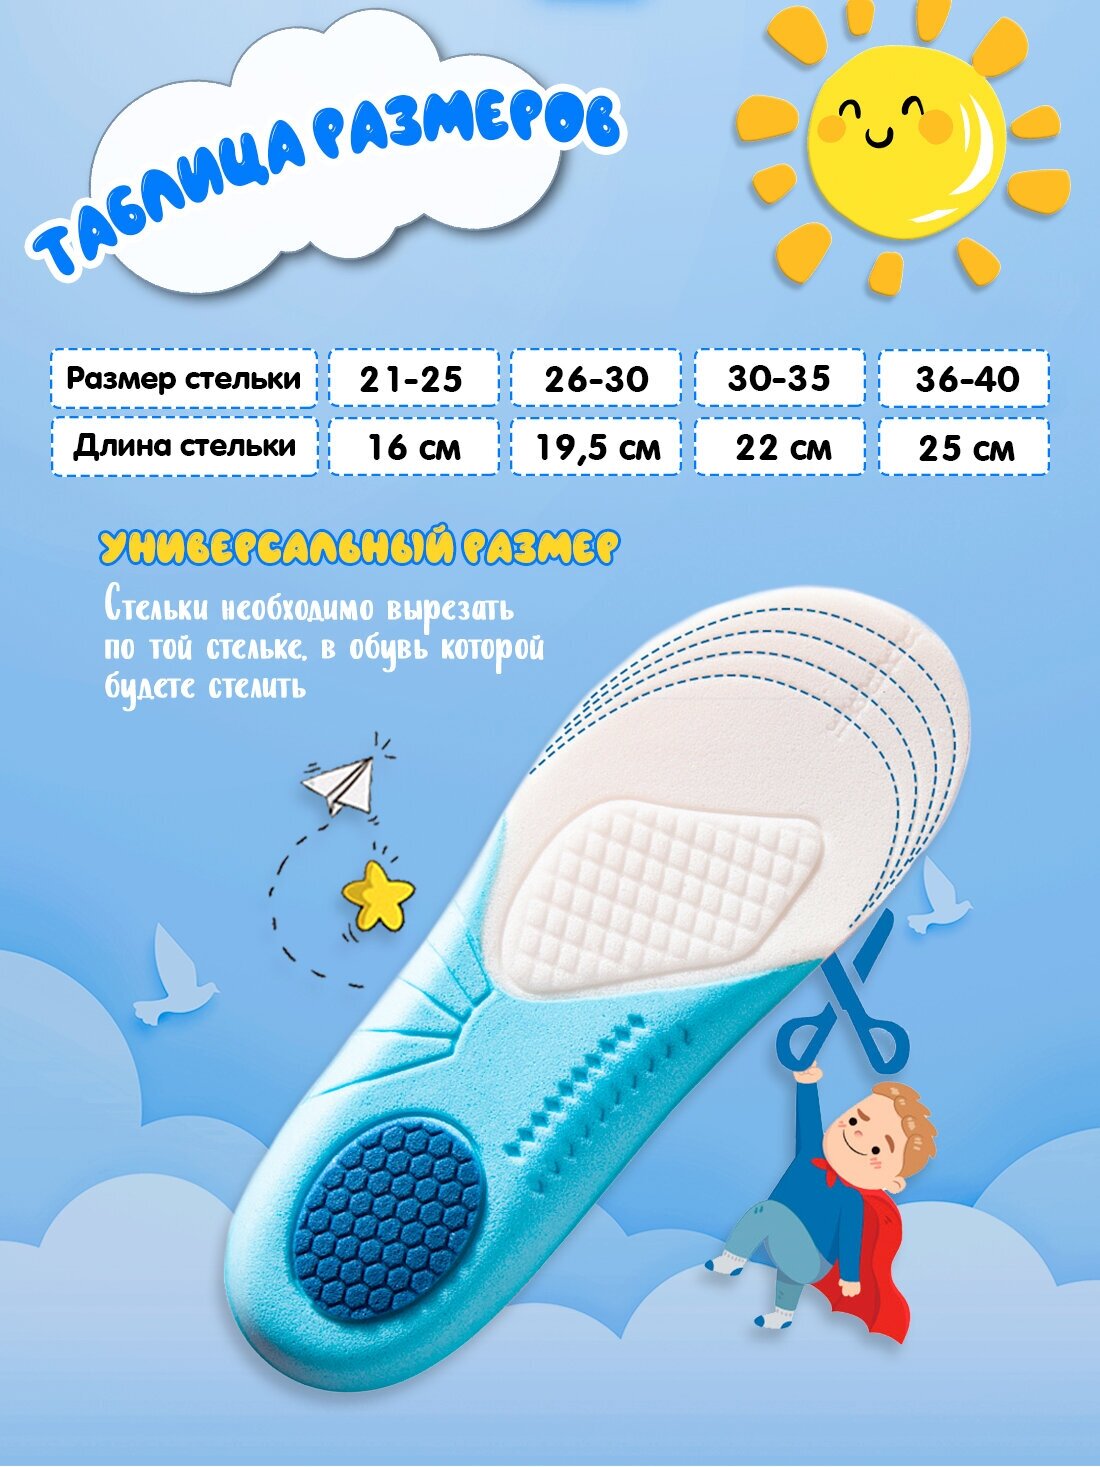 Стельки детские Super Feet для обуви мягкие дышащие Размер 26-30 (19,5 см)